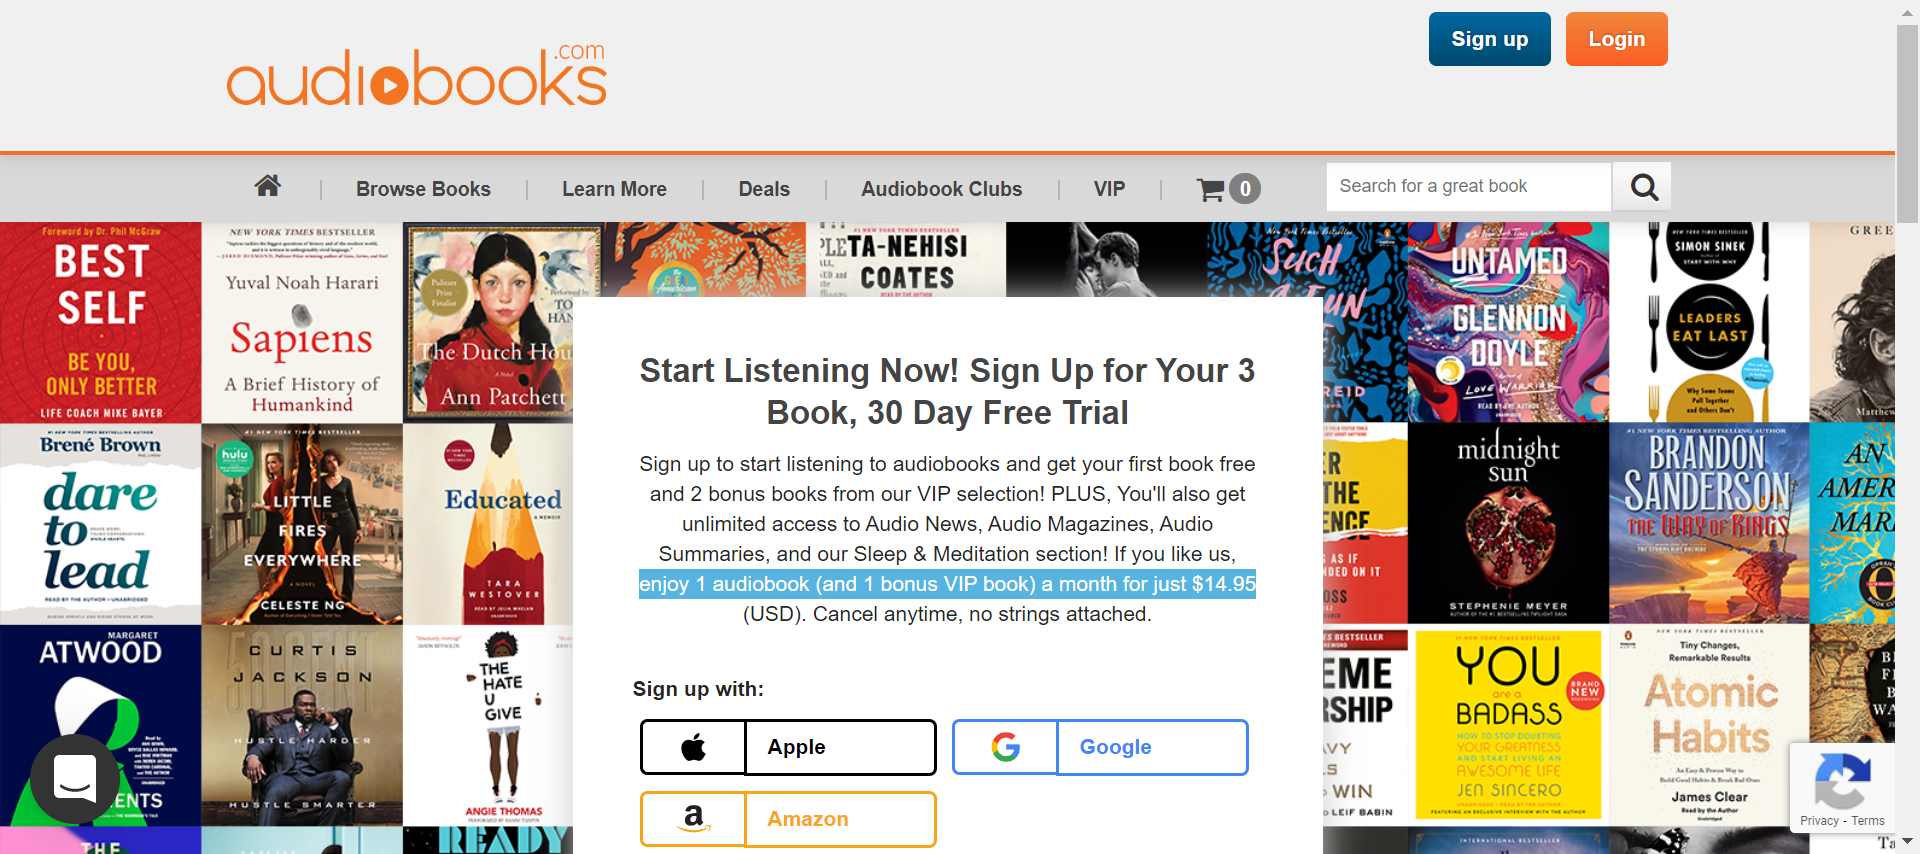 Audiobooks-com Free-Trial